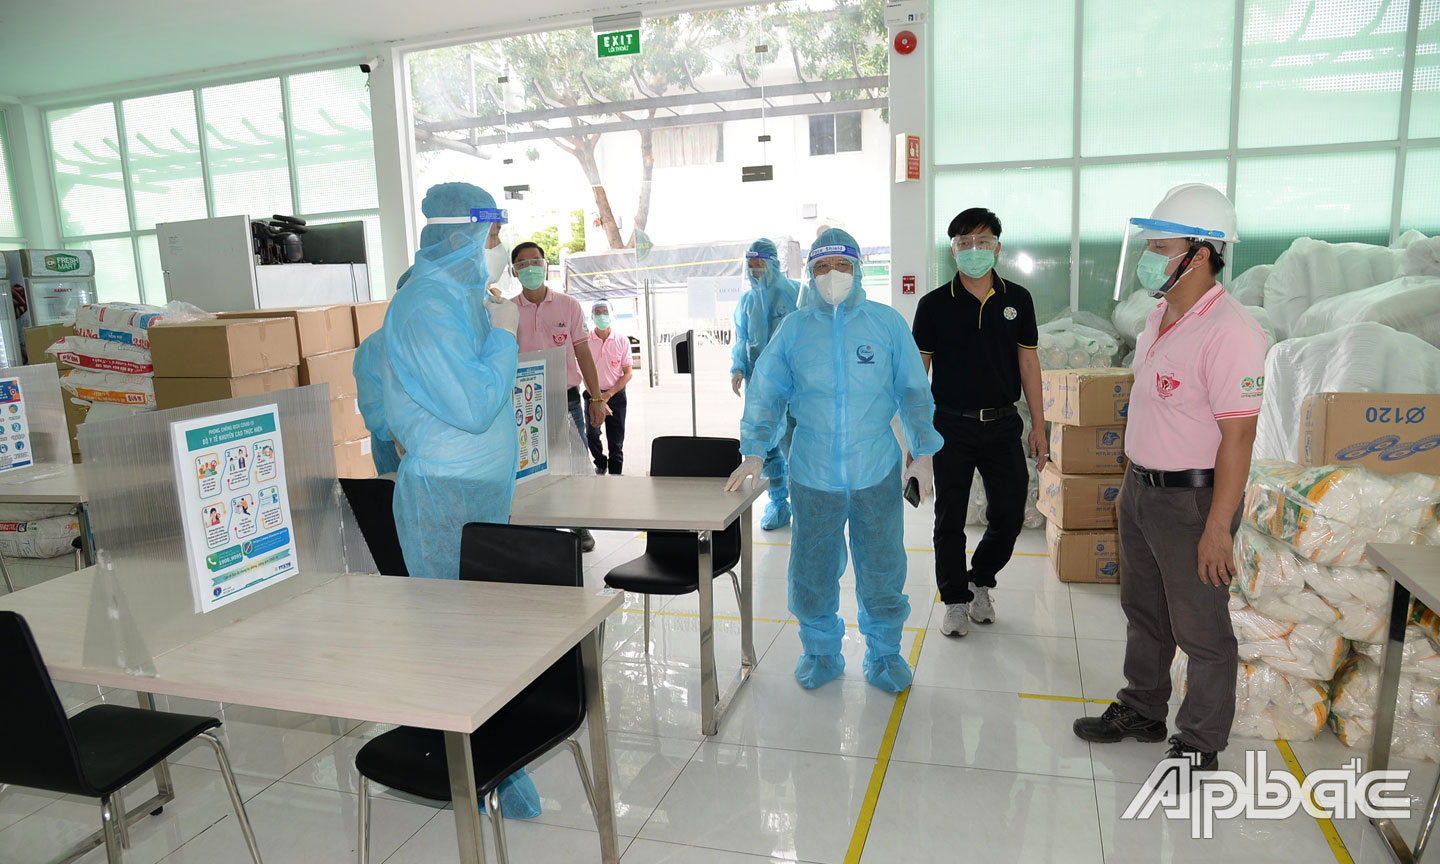 Doanh nghiệp đang chật vật do tác động của SARS-CoV-2. Ảnh: Minh Thành